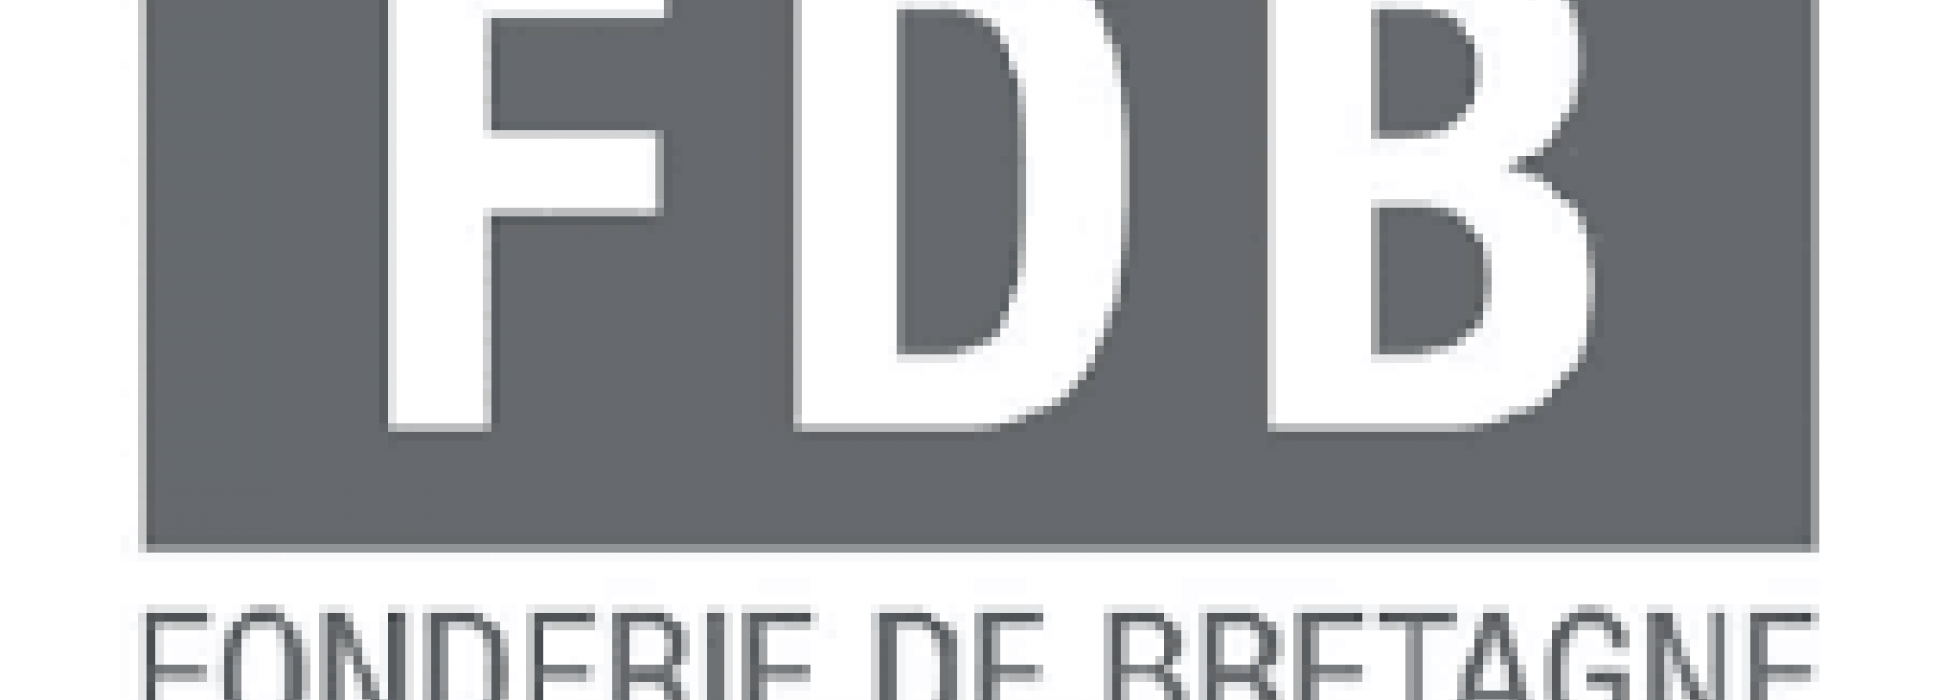 La fundición Fonderie de Bretagne tiene un nuevo director general